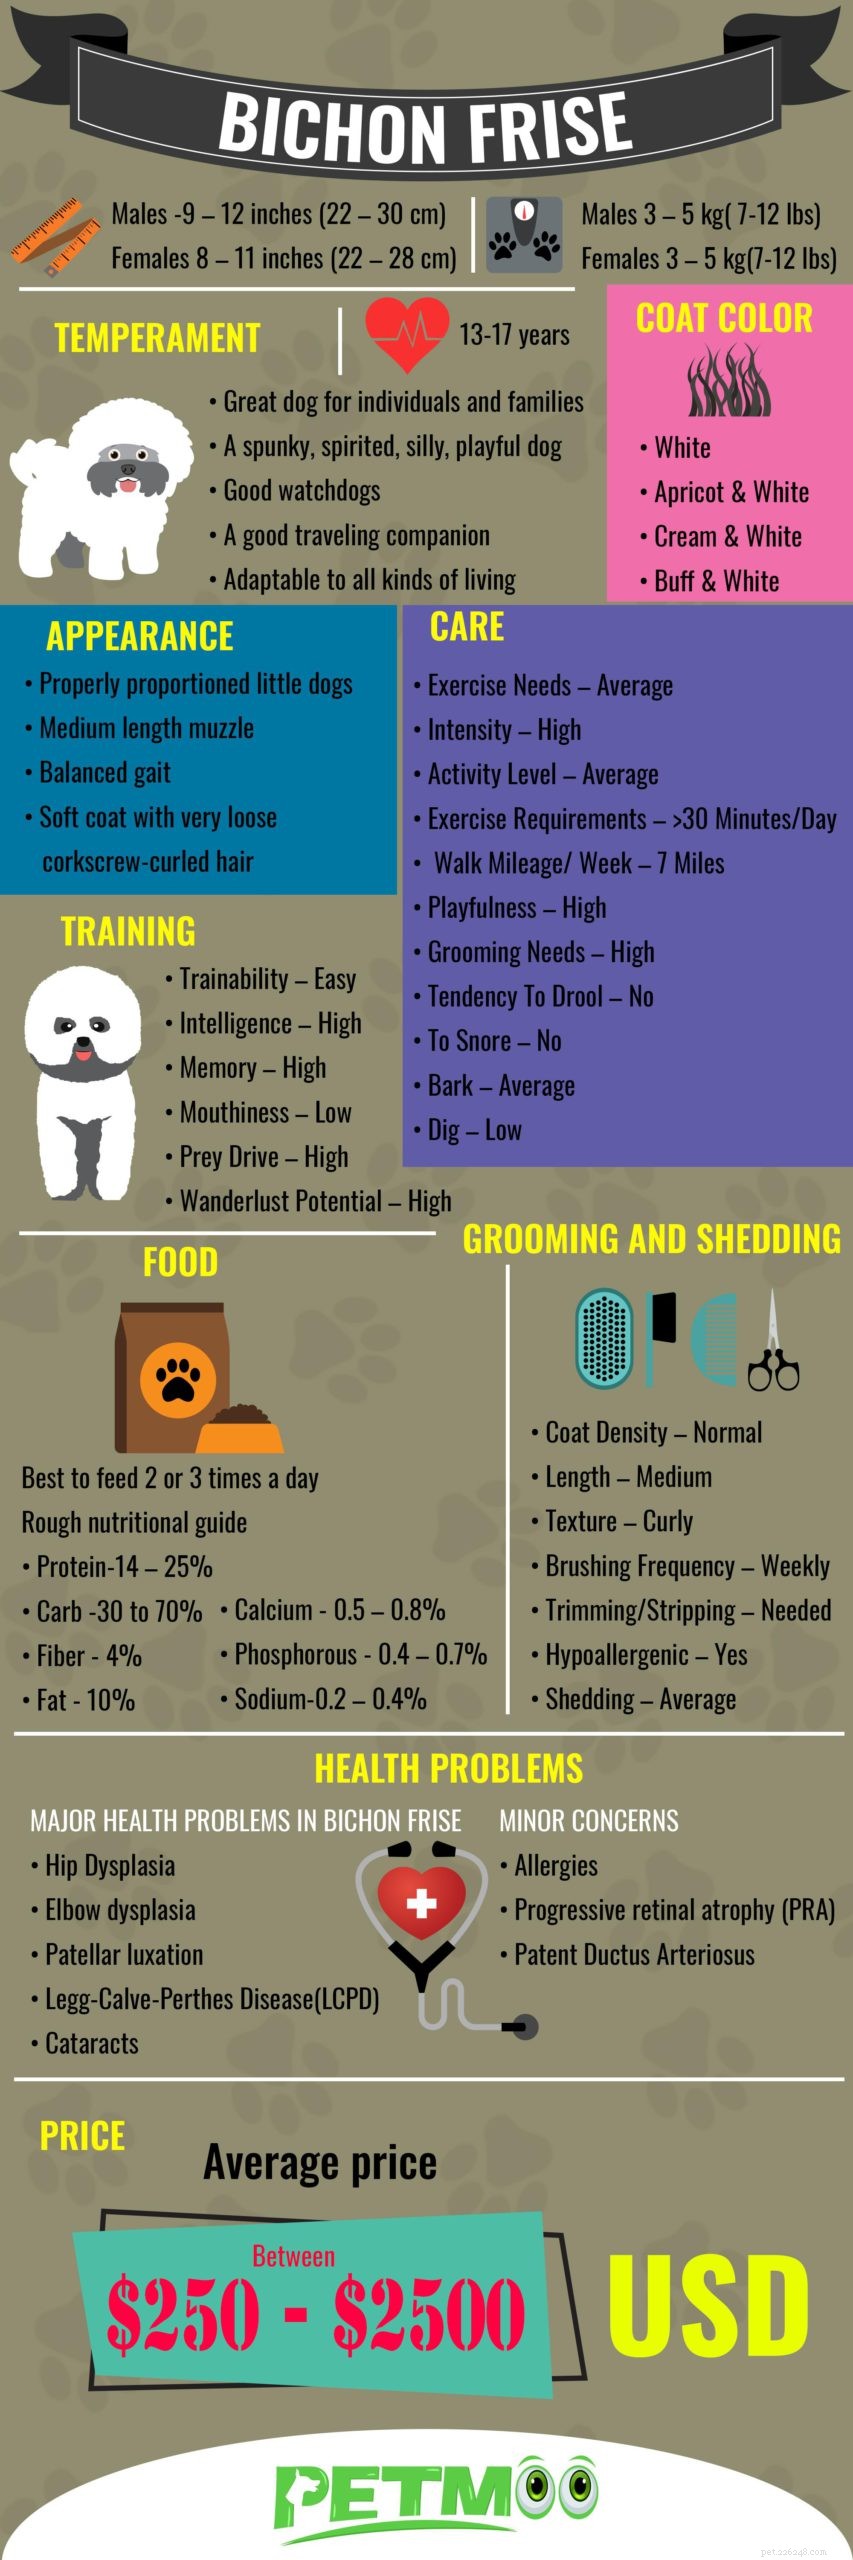 Bichon Frise – Informazioni complete sulla razza canina